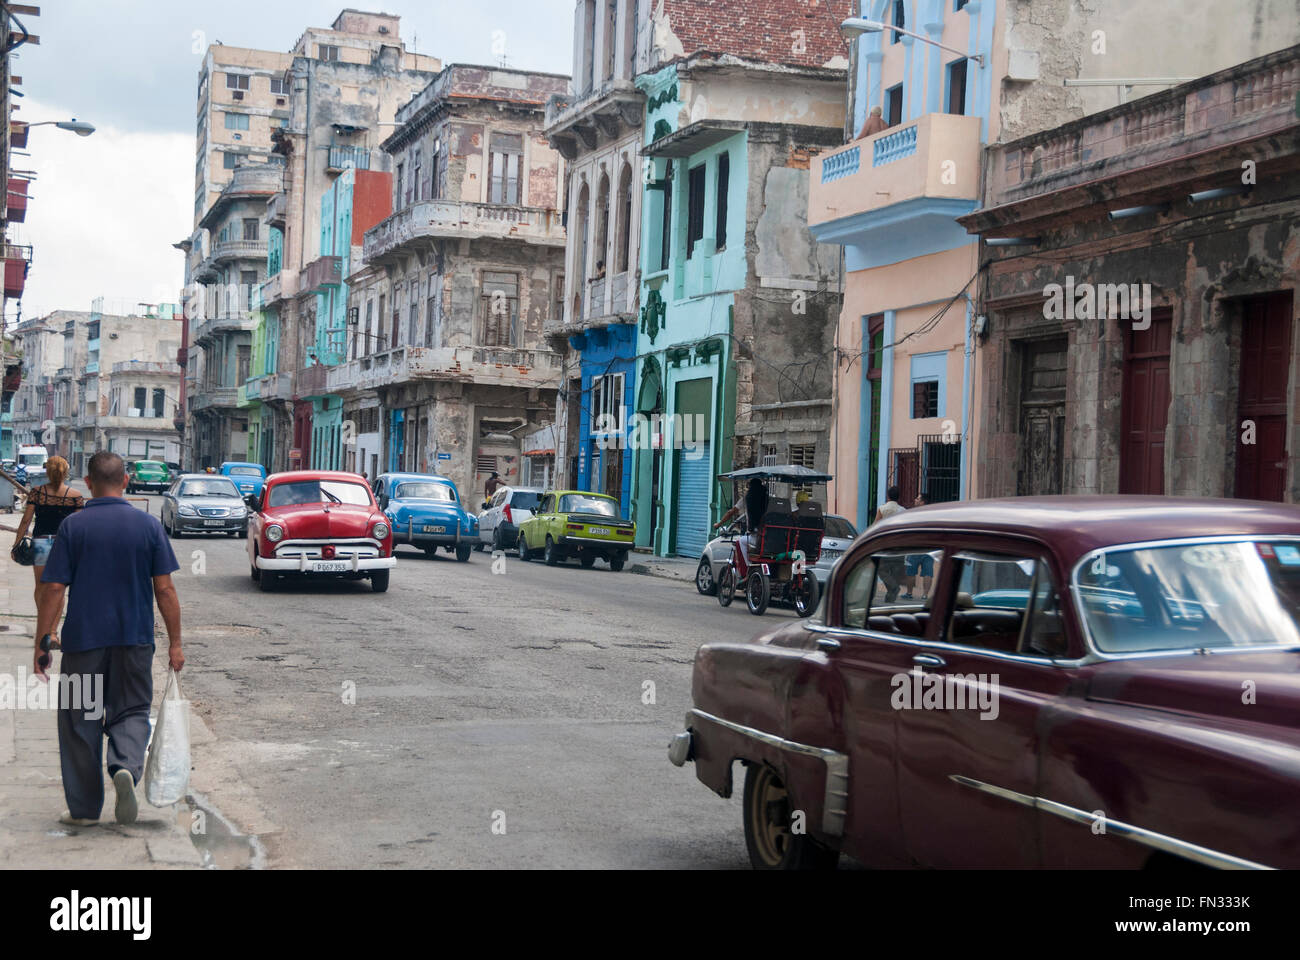 Los edificios ruinosos y vintage coches americanos usados como taxis son un espectáculo común en el distrito central de La Habana. Foto de stock